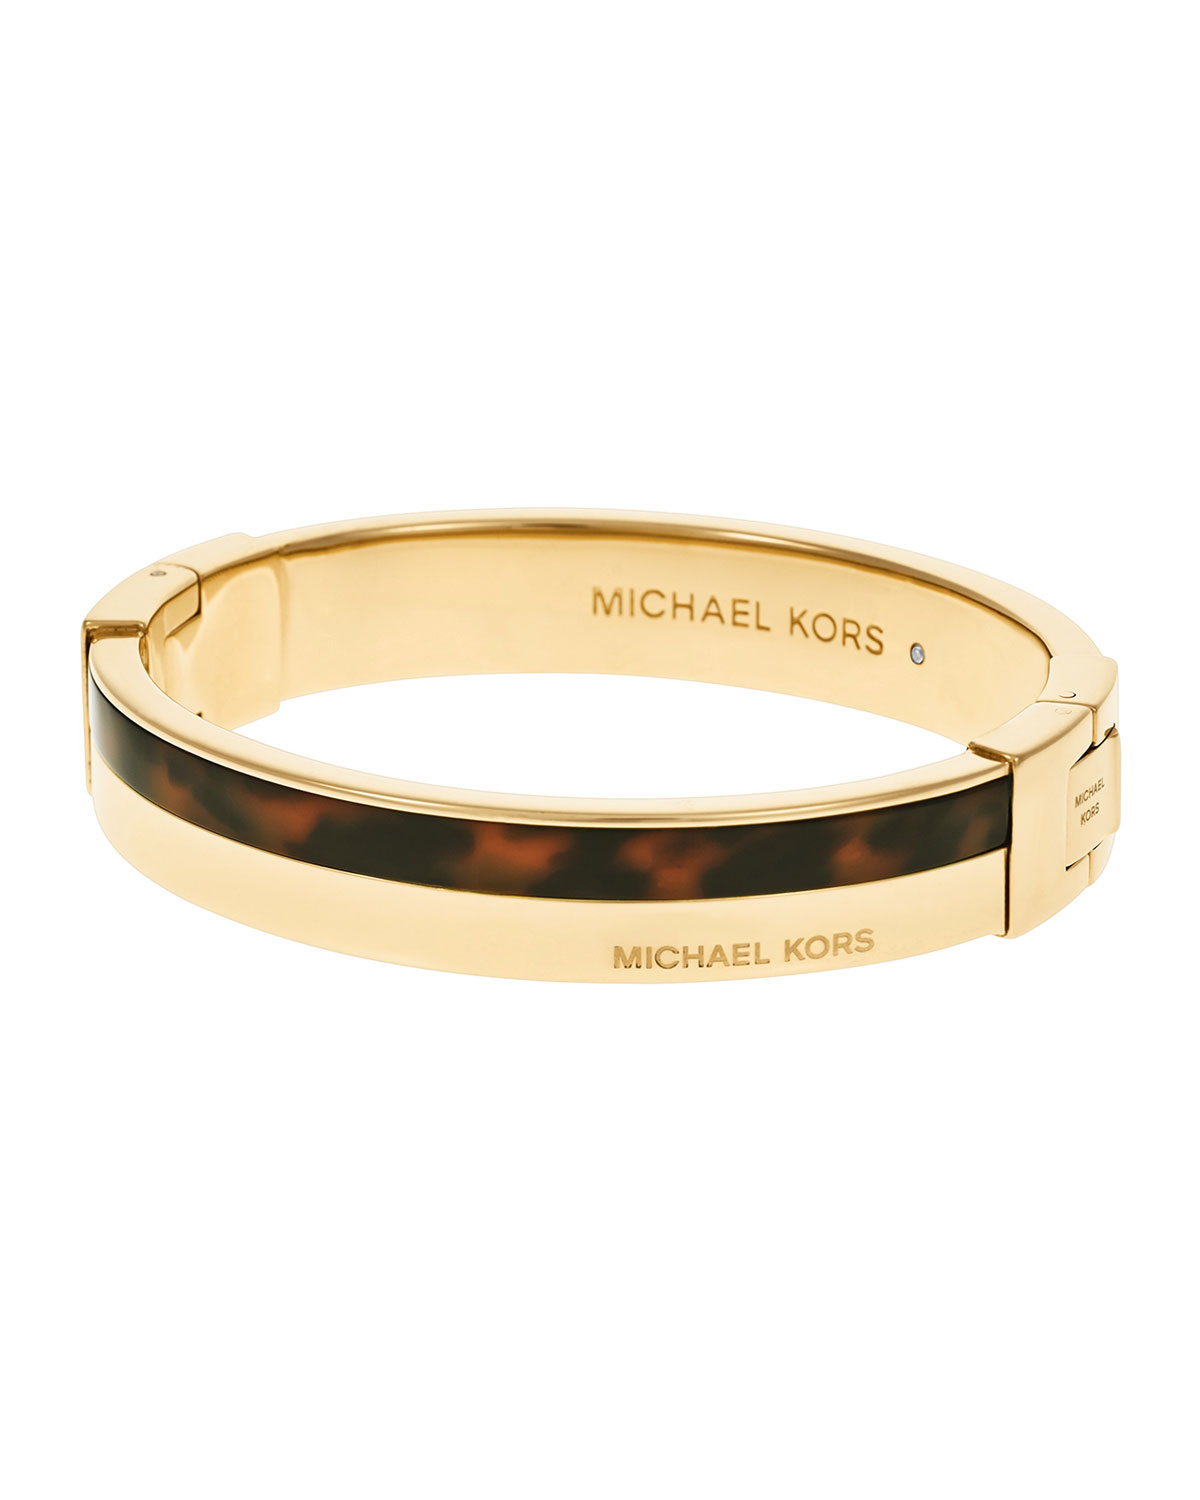 Michael kors Logo Hinge Bangle Bracelet in White (steel) | Lyst